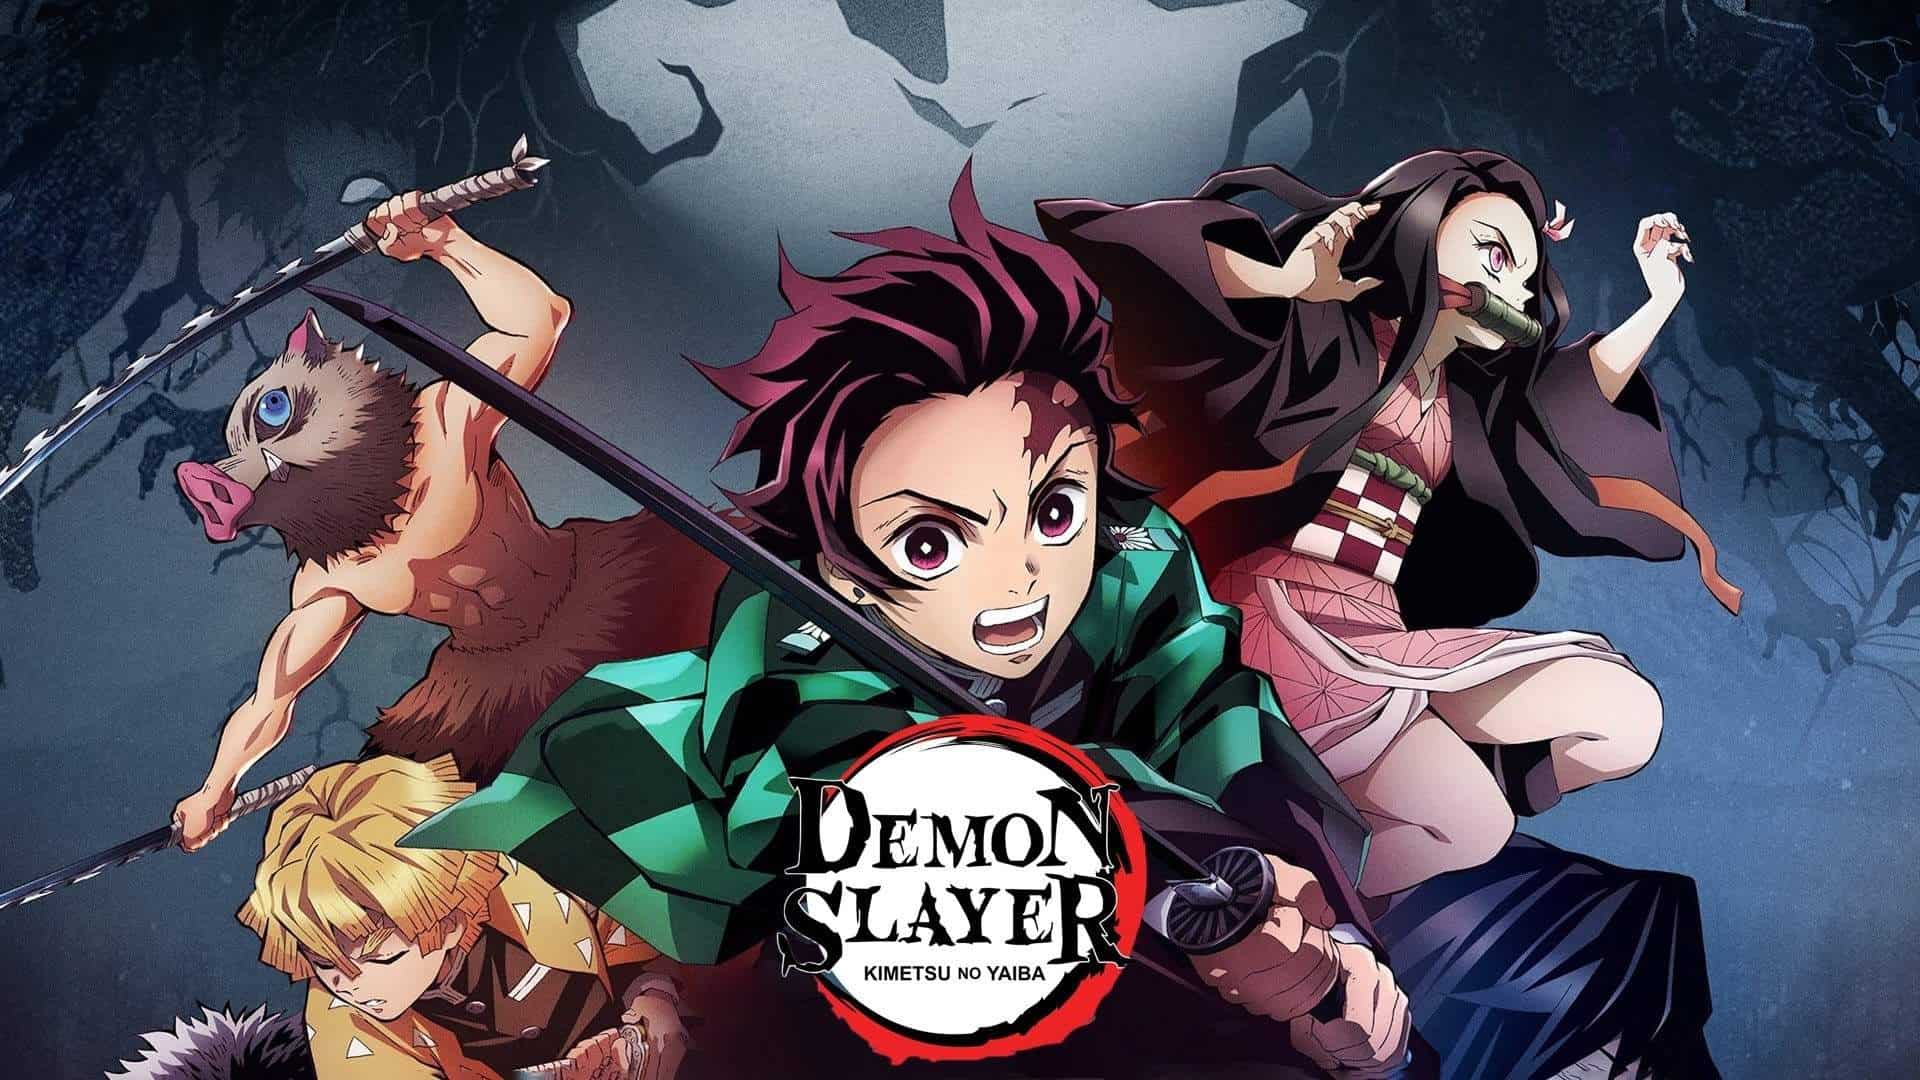 Official Poster Of Demon Slayer: Kimetsu no Yaiba (Credits: Crunchyroll)